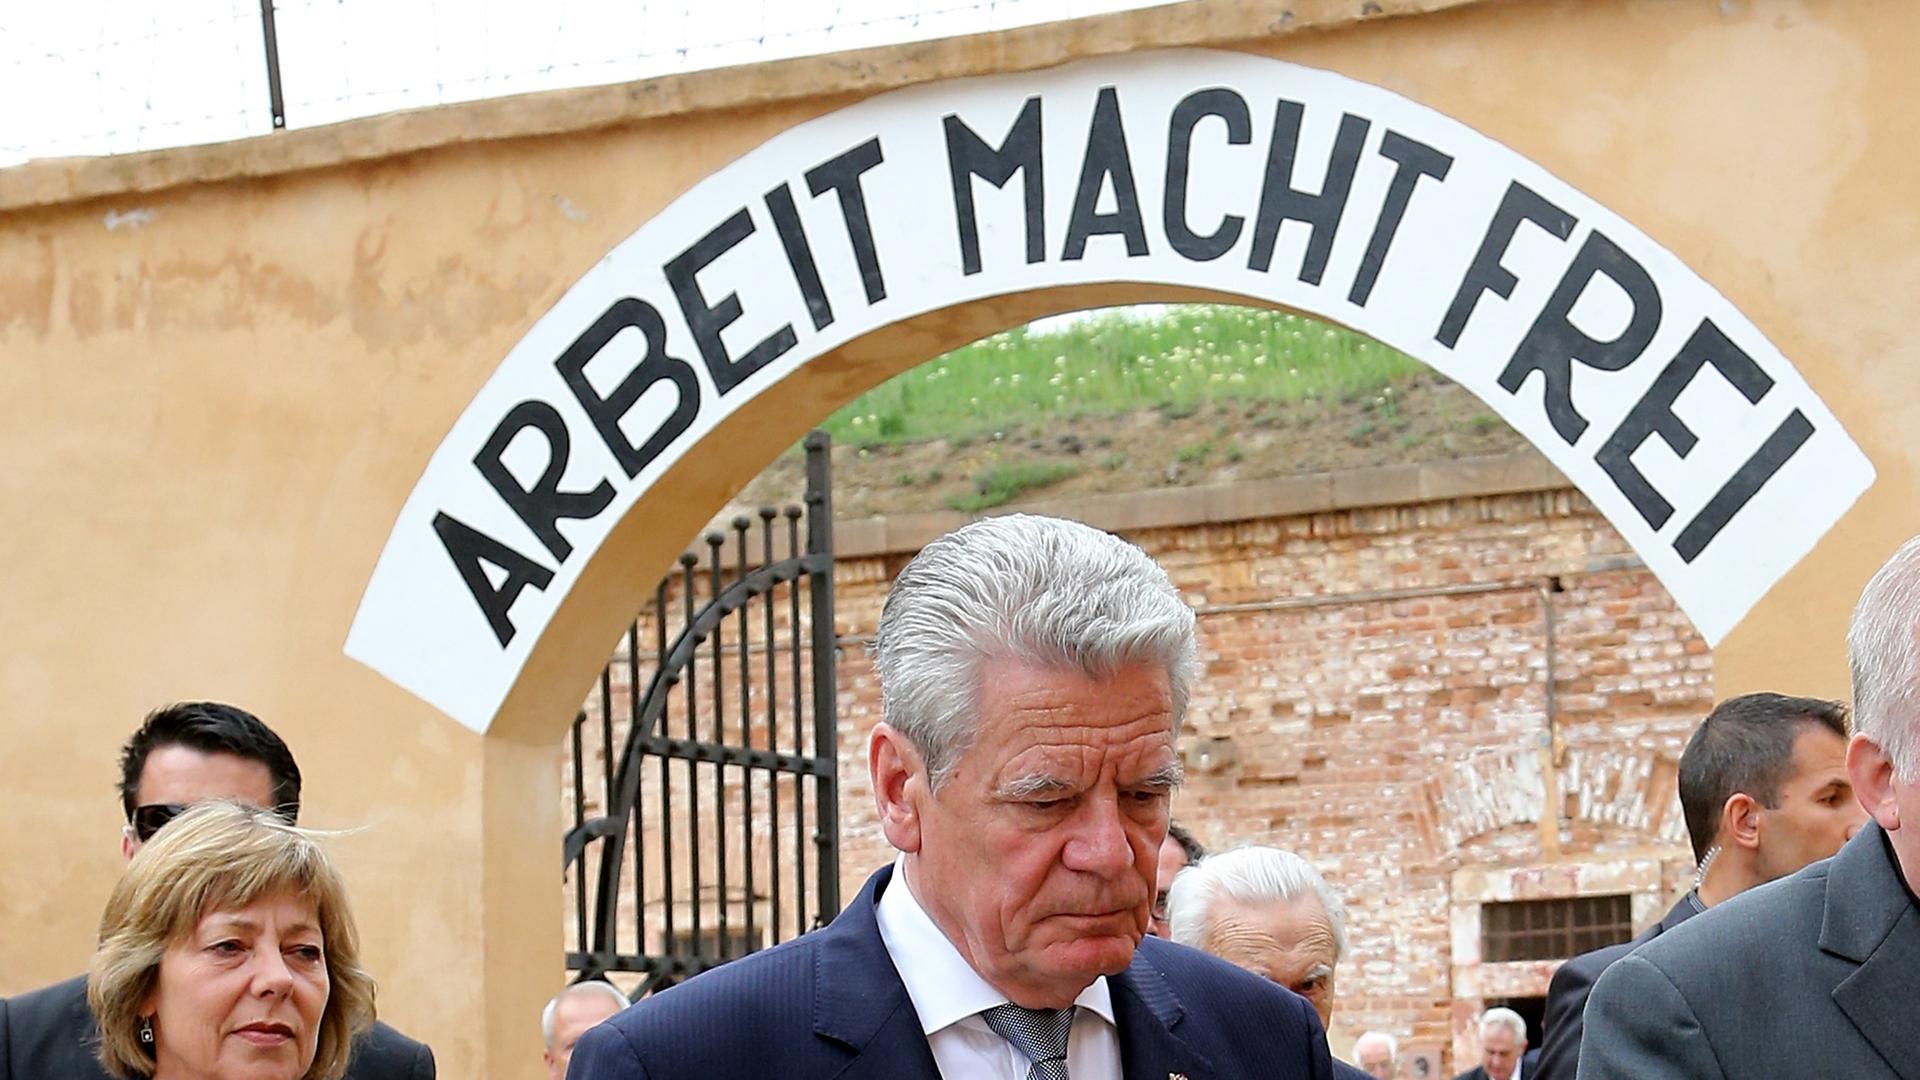 Bundespräsident Joachim Gauck und seine Lebensgefährtin Daniela Schadt besuchen am 06.05.2014 die Gedenkstätte des ehemaligen Konzentrationslagers Theresienstadt. Das deutsche Staatsoberhaupt hält sich zu einem viertägigen Staatsbesuch in Tschechien auf. 